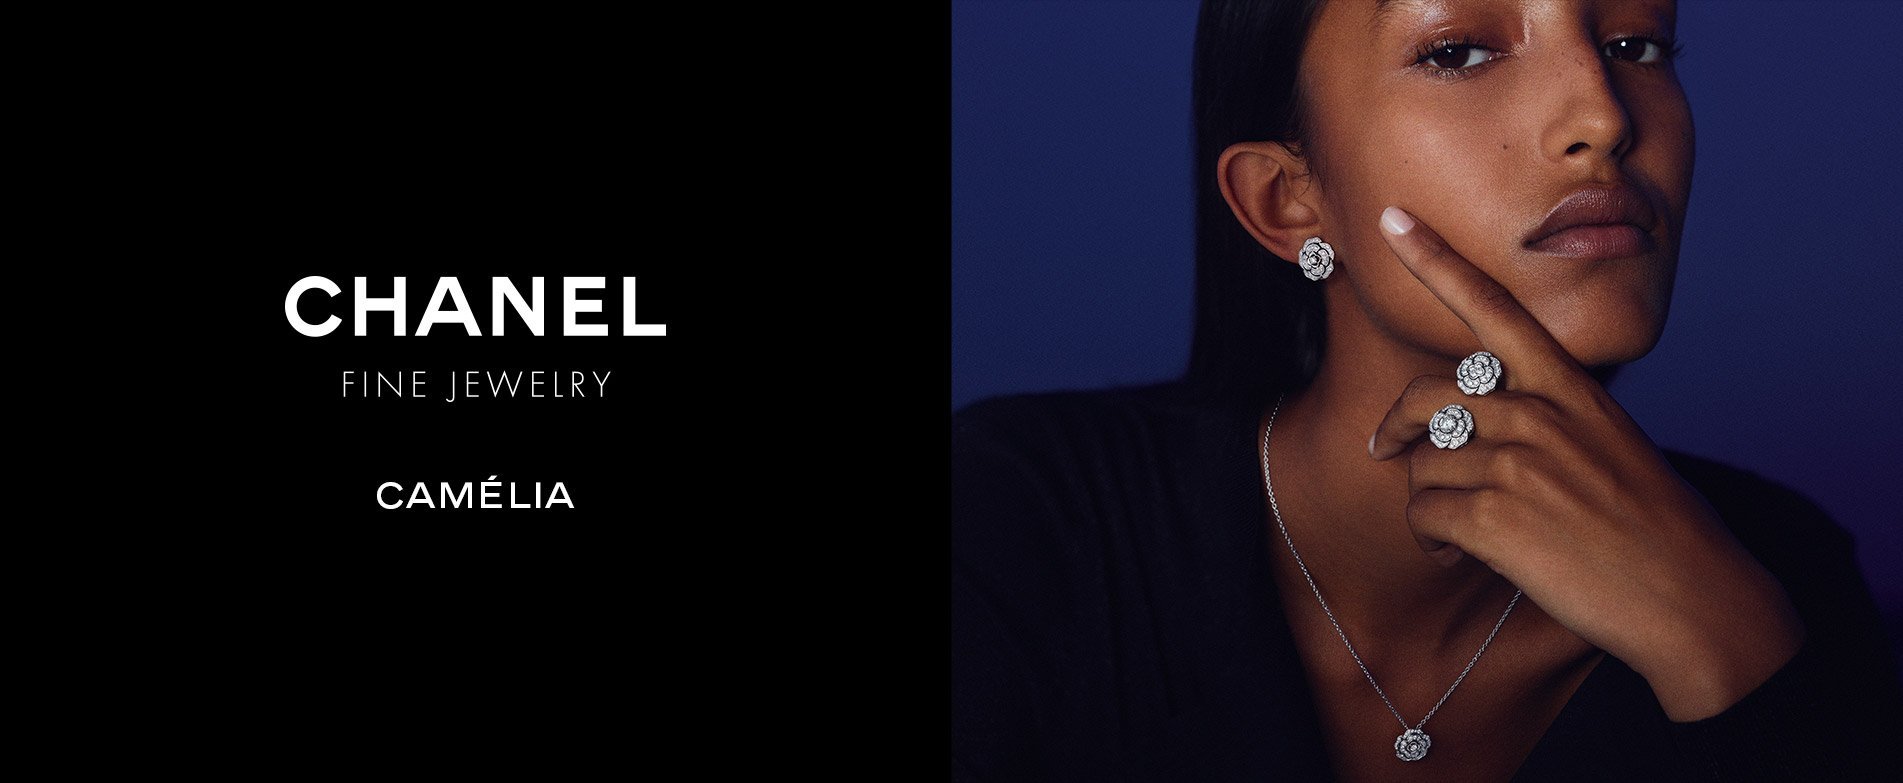 CH Premier Jewelers - Chanel Fine Jewelry - Camèlia